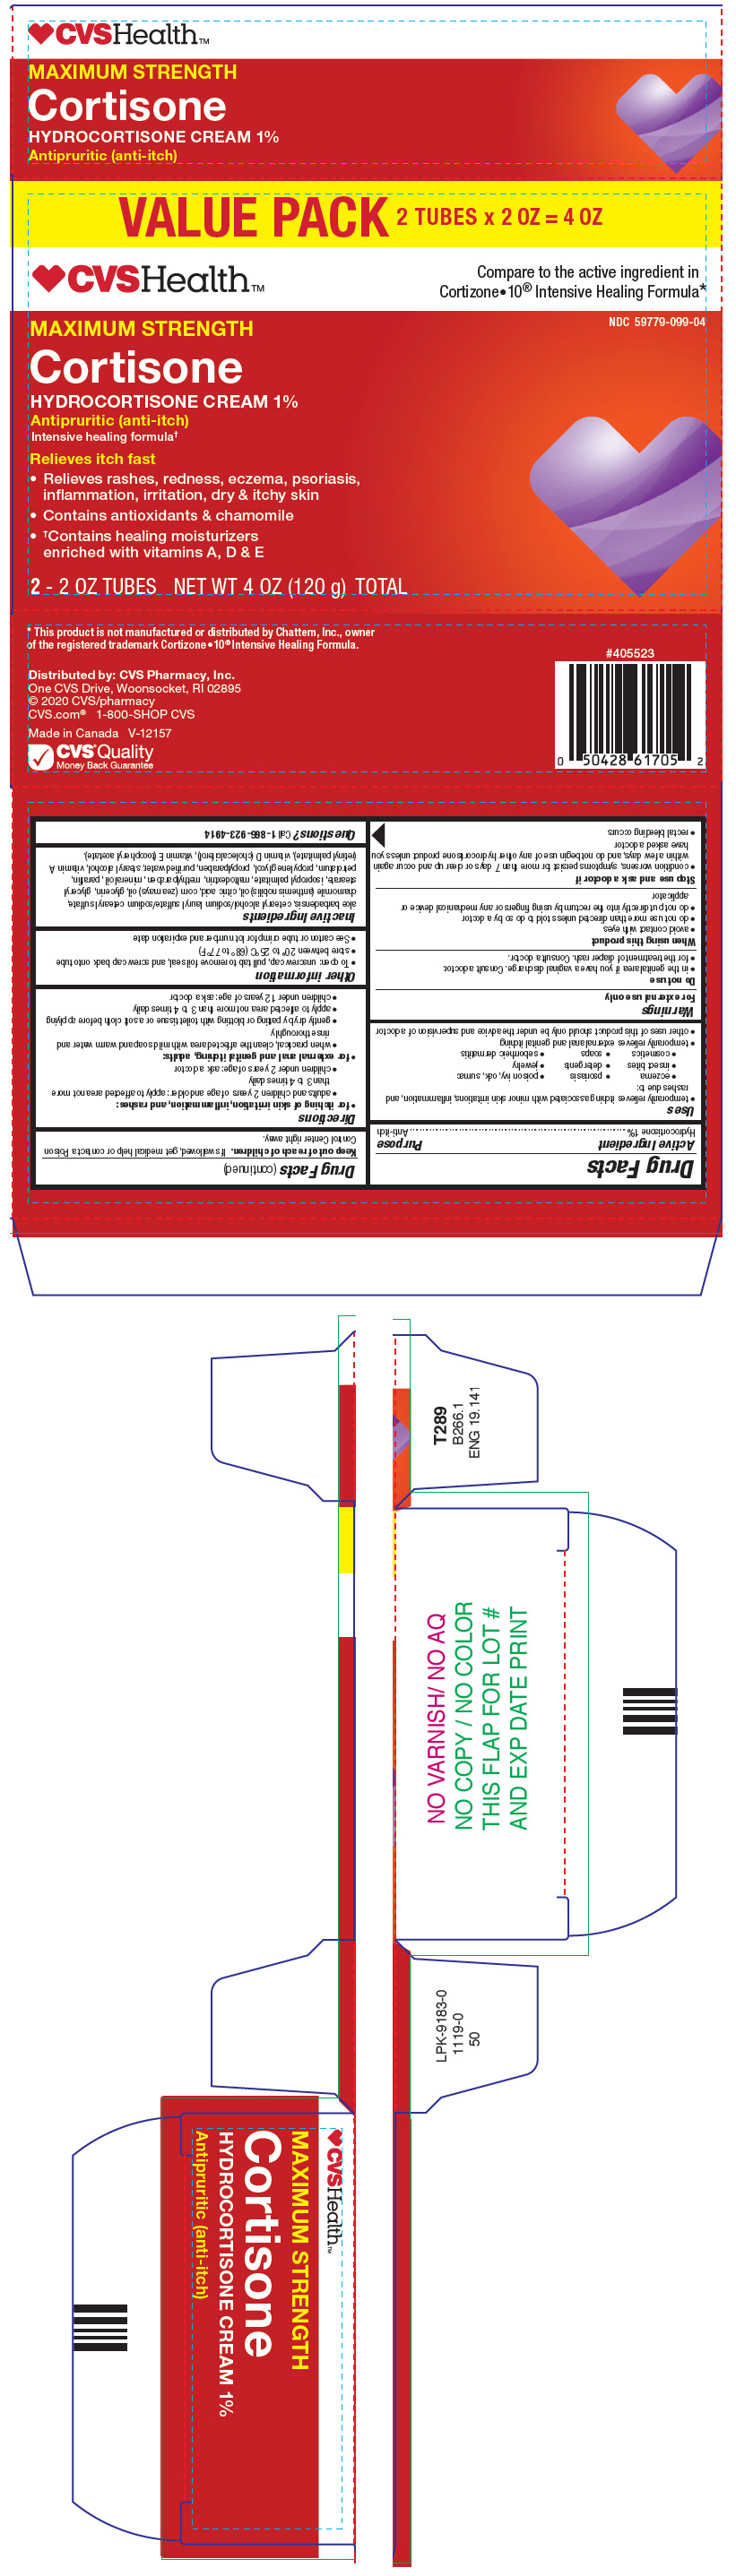 PRINCIPAL DISPLAY PANEL - 2 60 g Tube Carton